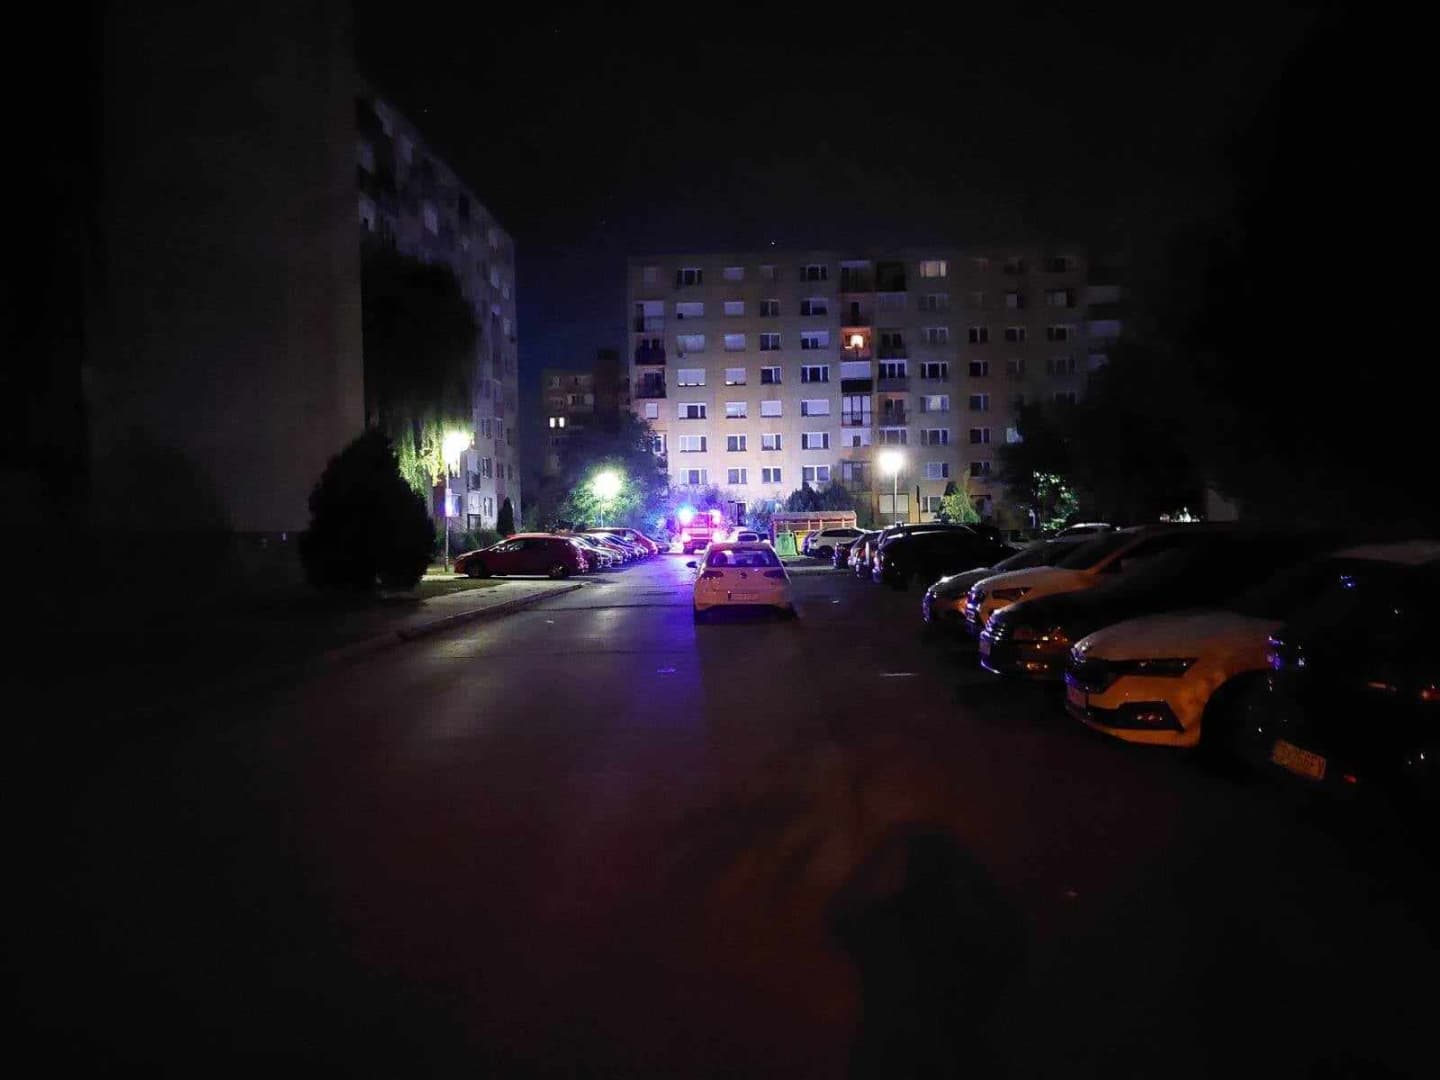 Közel két órán át ellenőriztek a tűzoltók egy lakóházat az éjszaka a dunaszerdahelyi Keleti lakótelepen